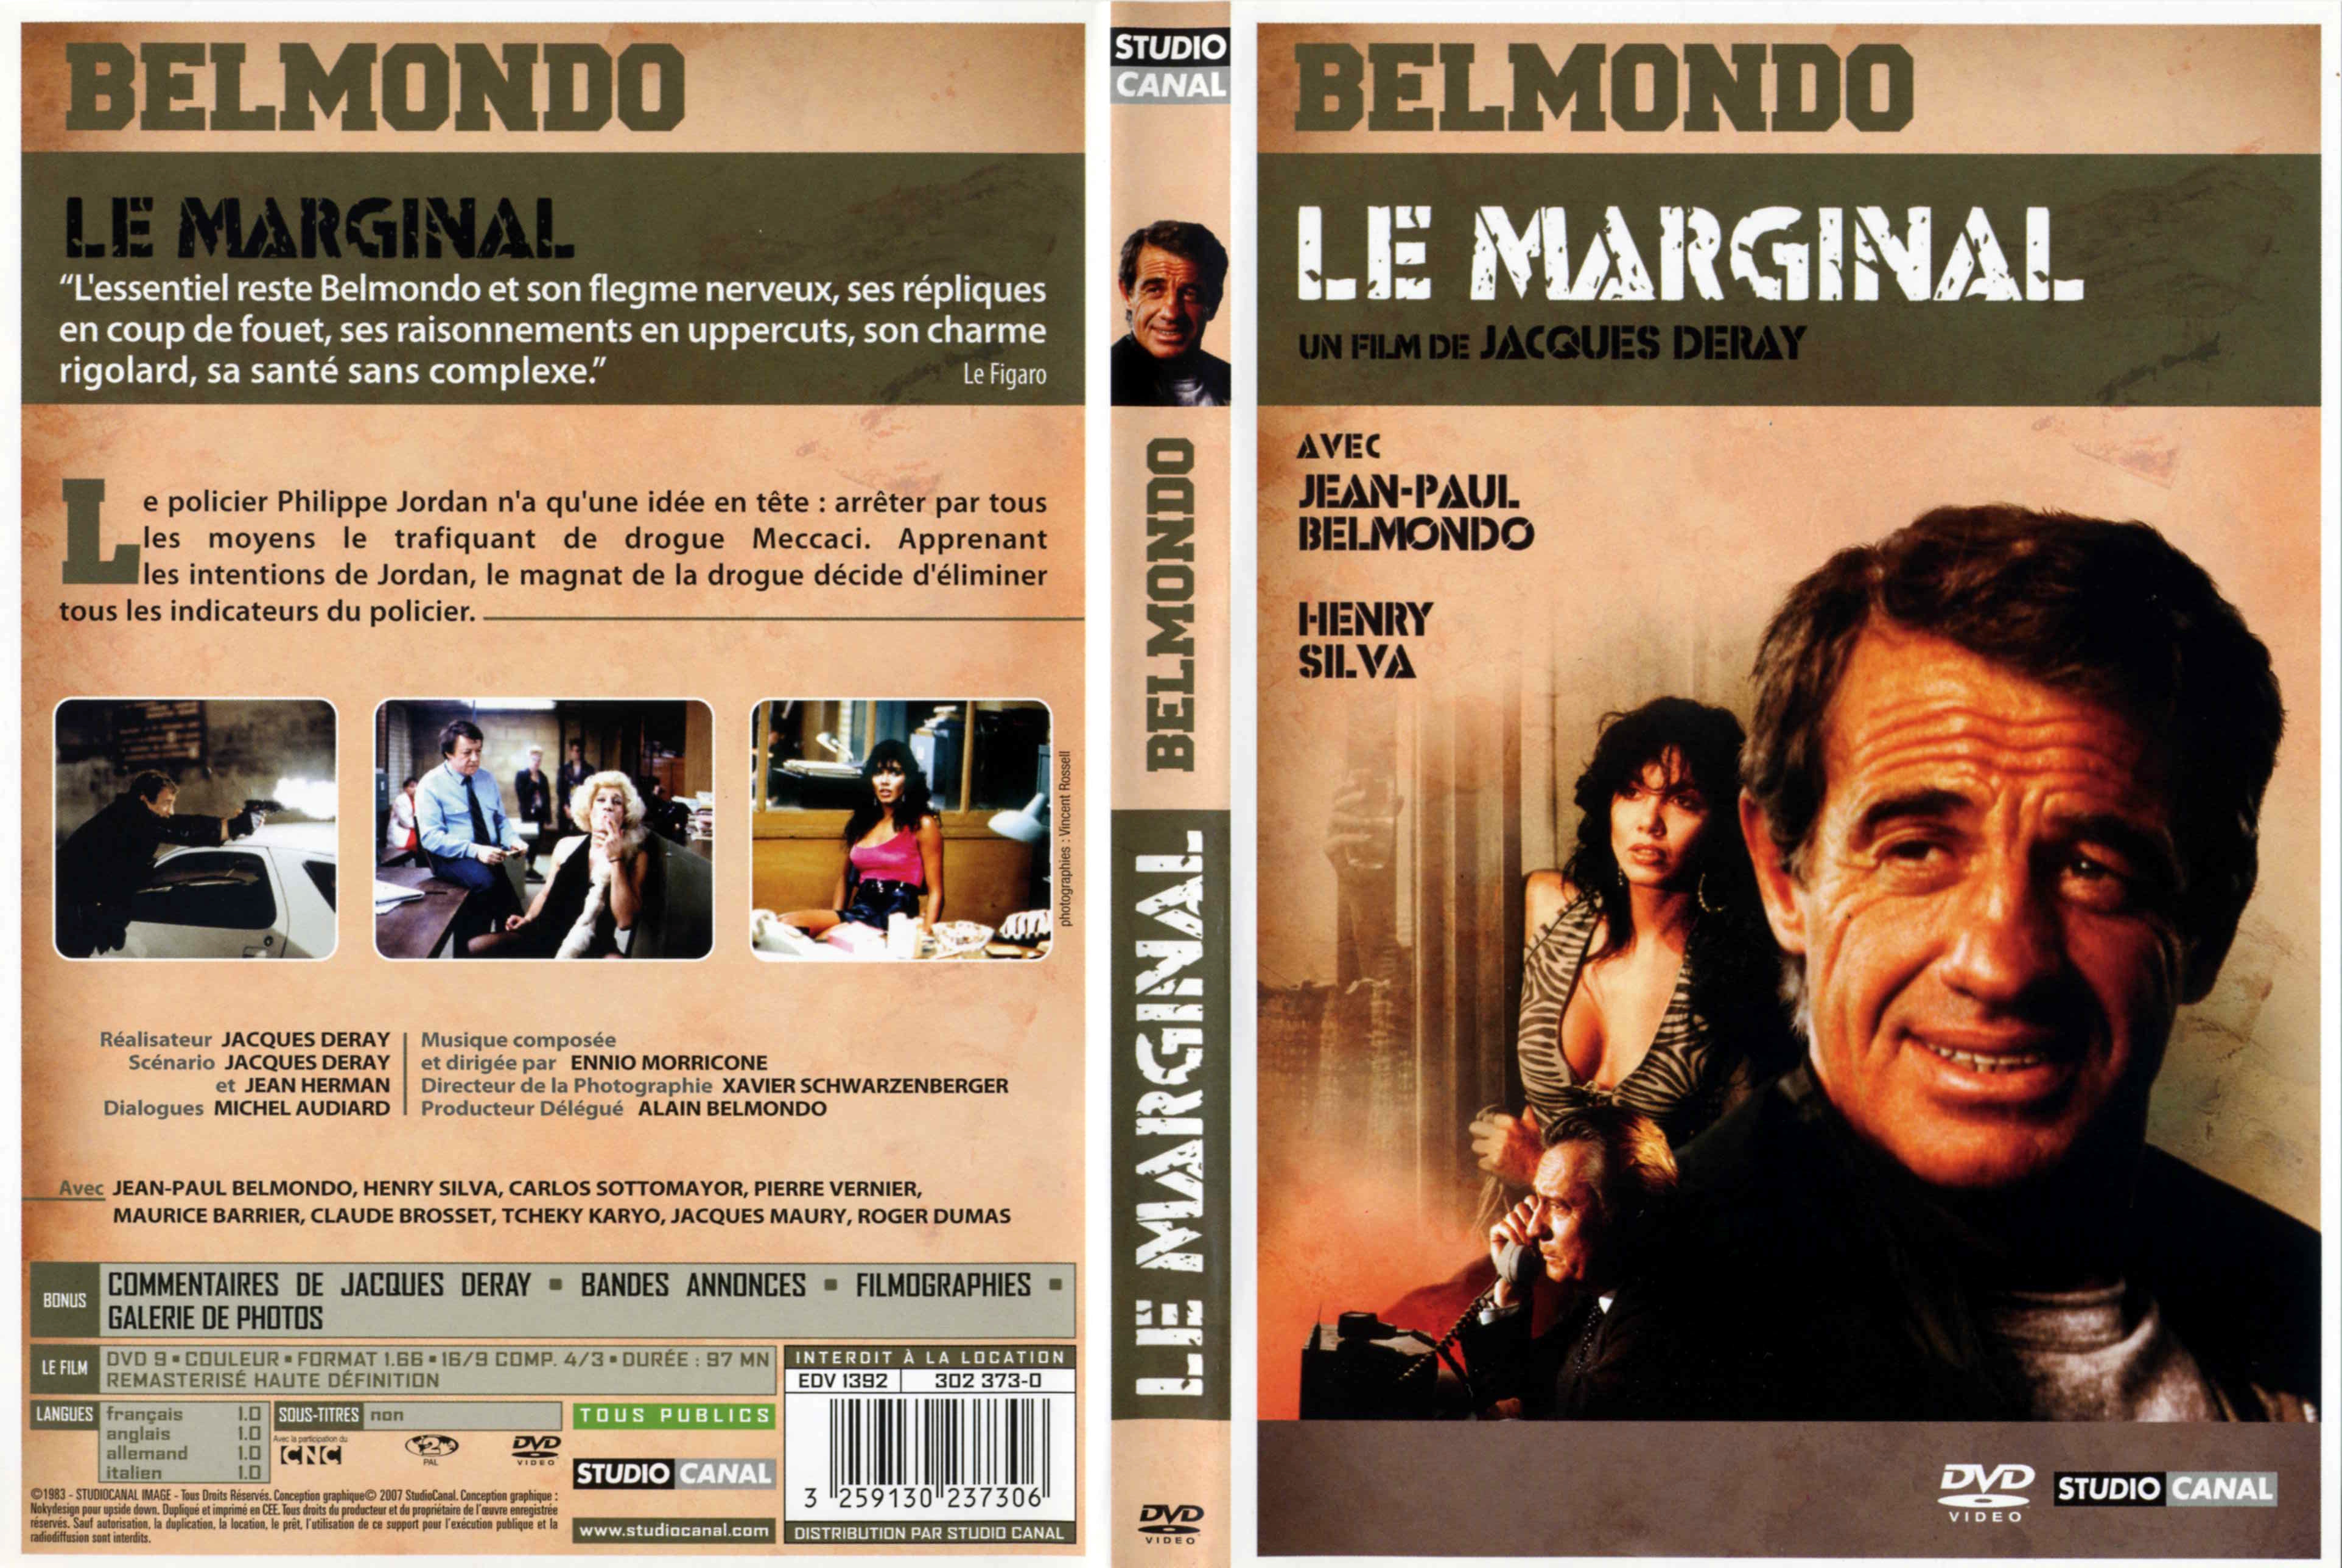 Jaquette DVD Le marginal v2